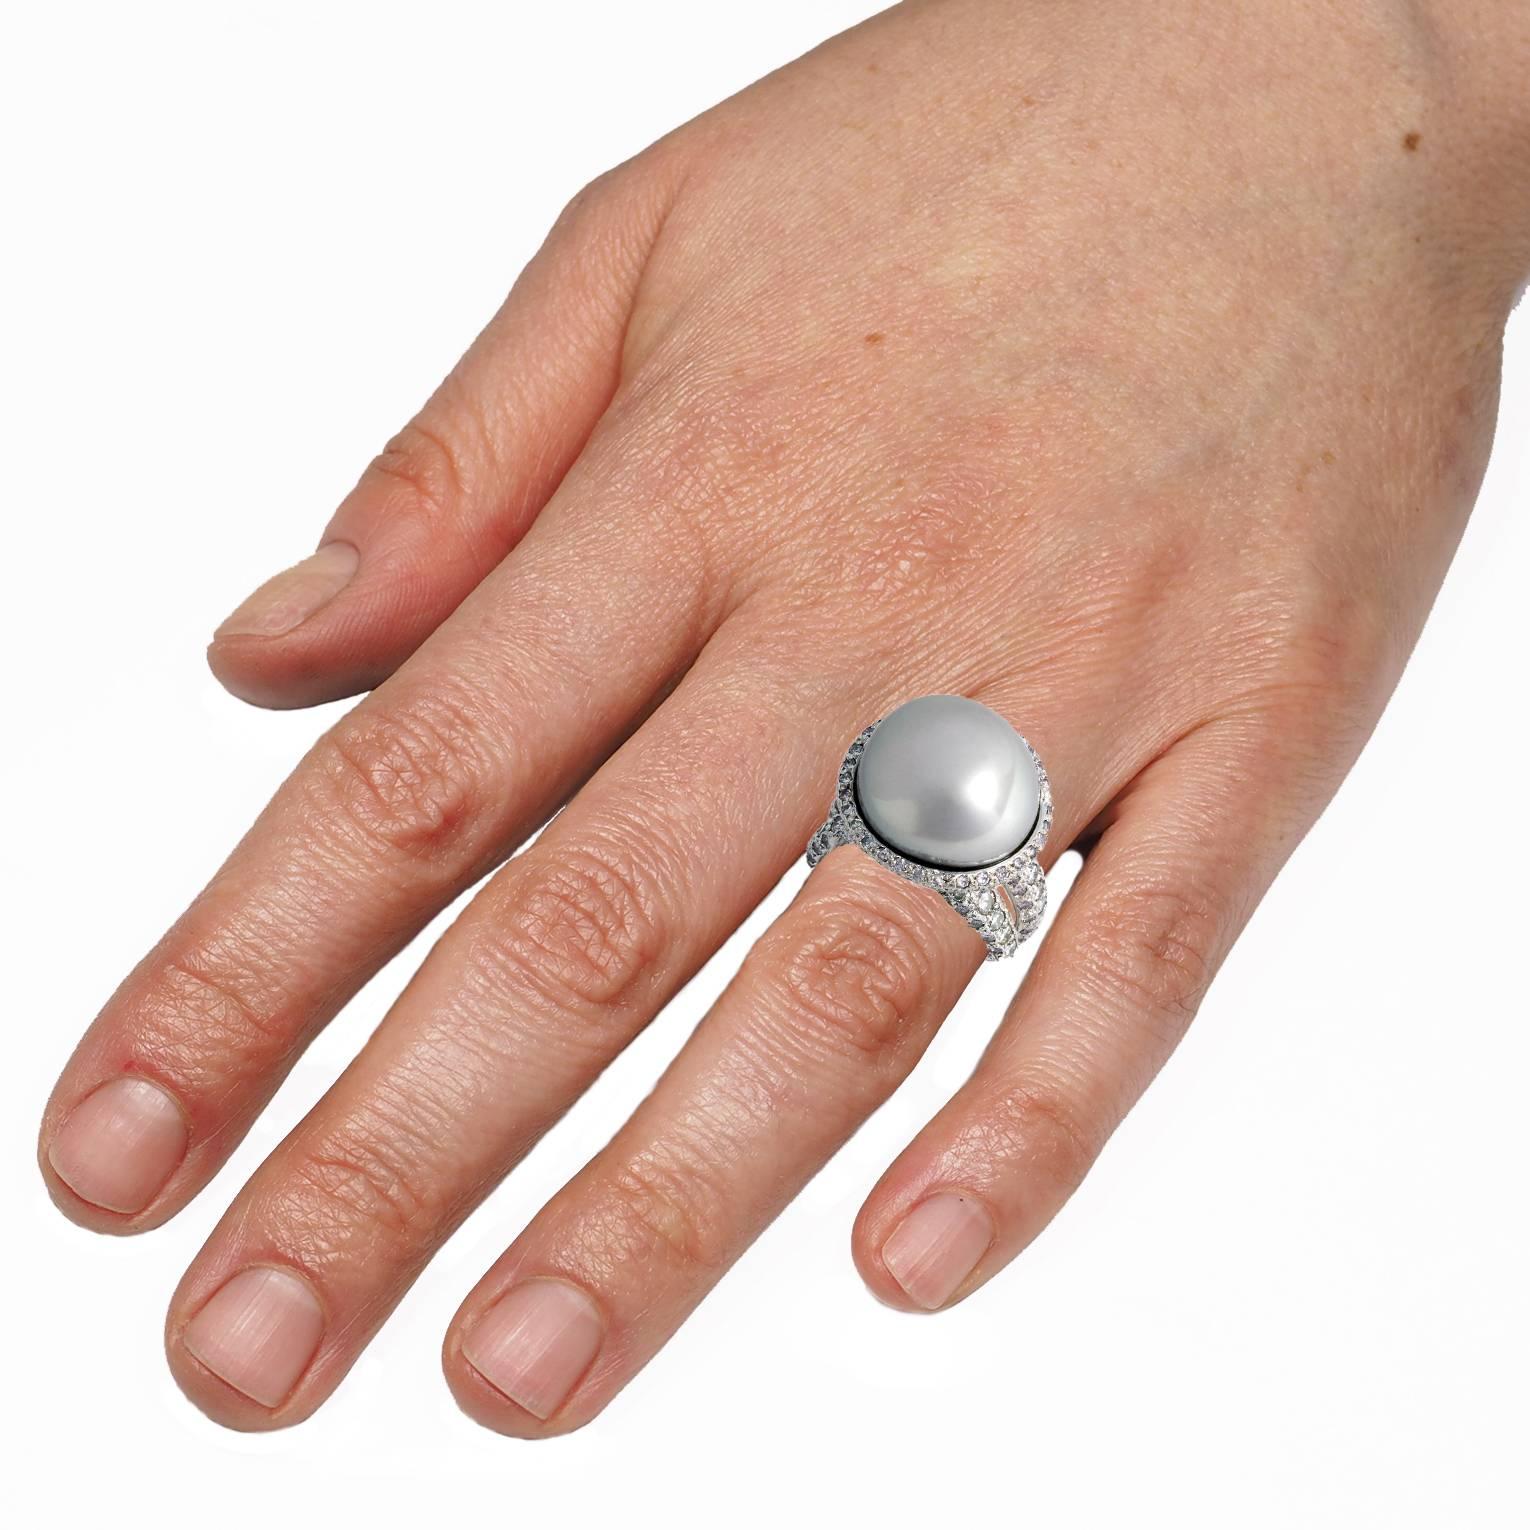 Der Ring aus 18k Weißgold, Diamanten 1,59 ct. und einem grau-rosa Keshi 
perle ist definitiv eine Augenweide.